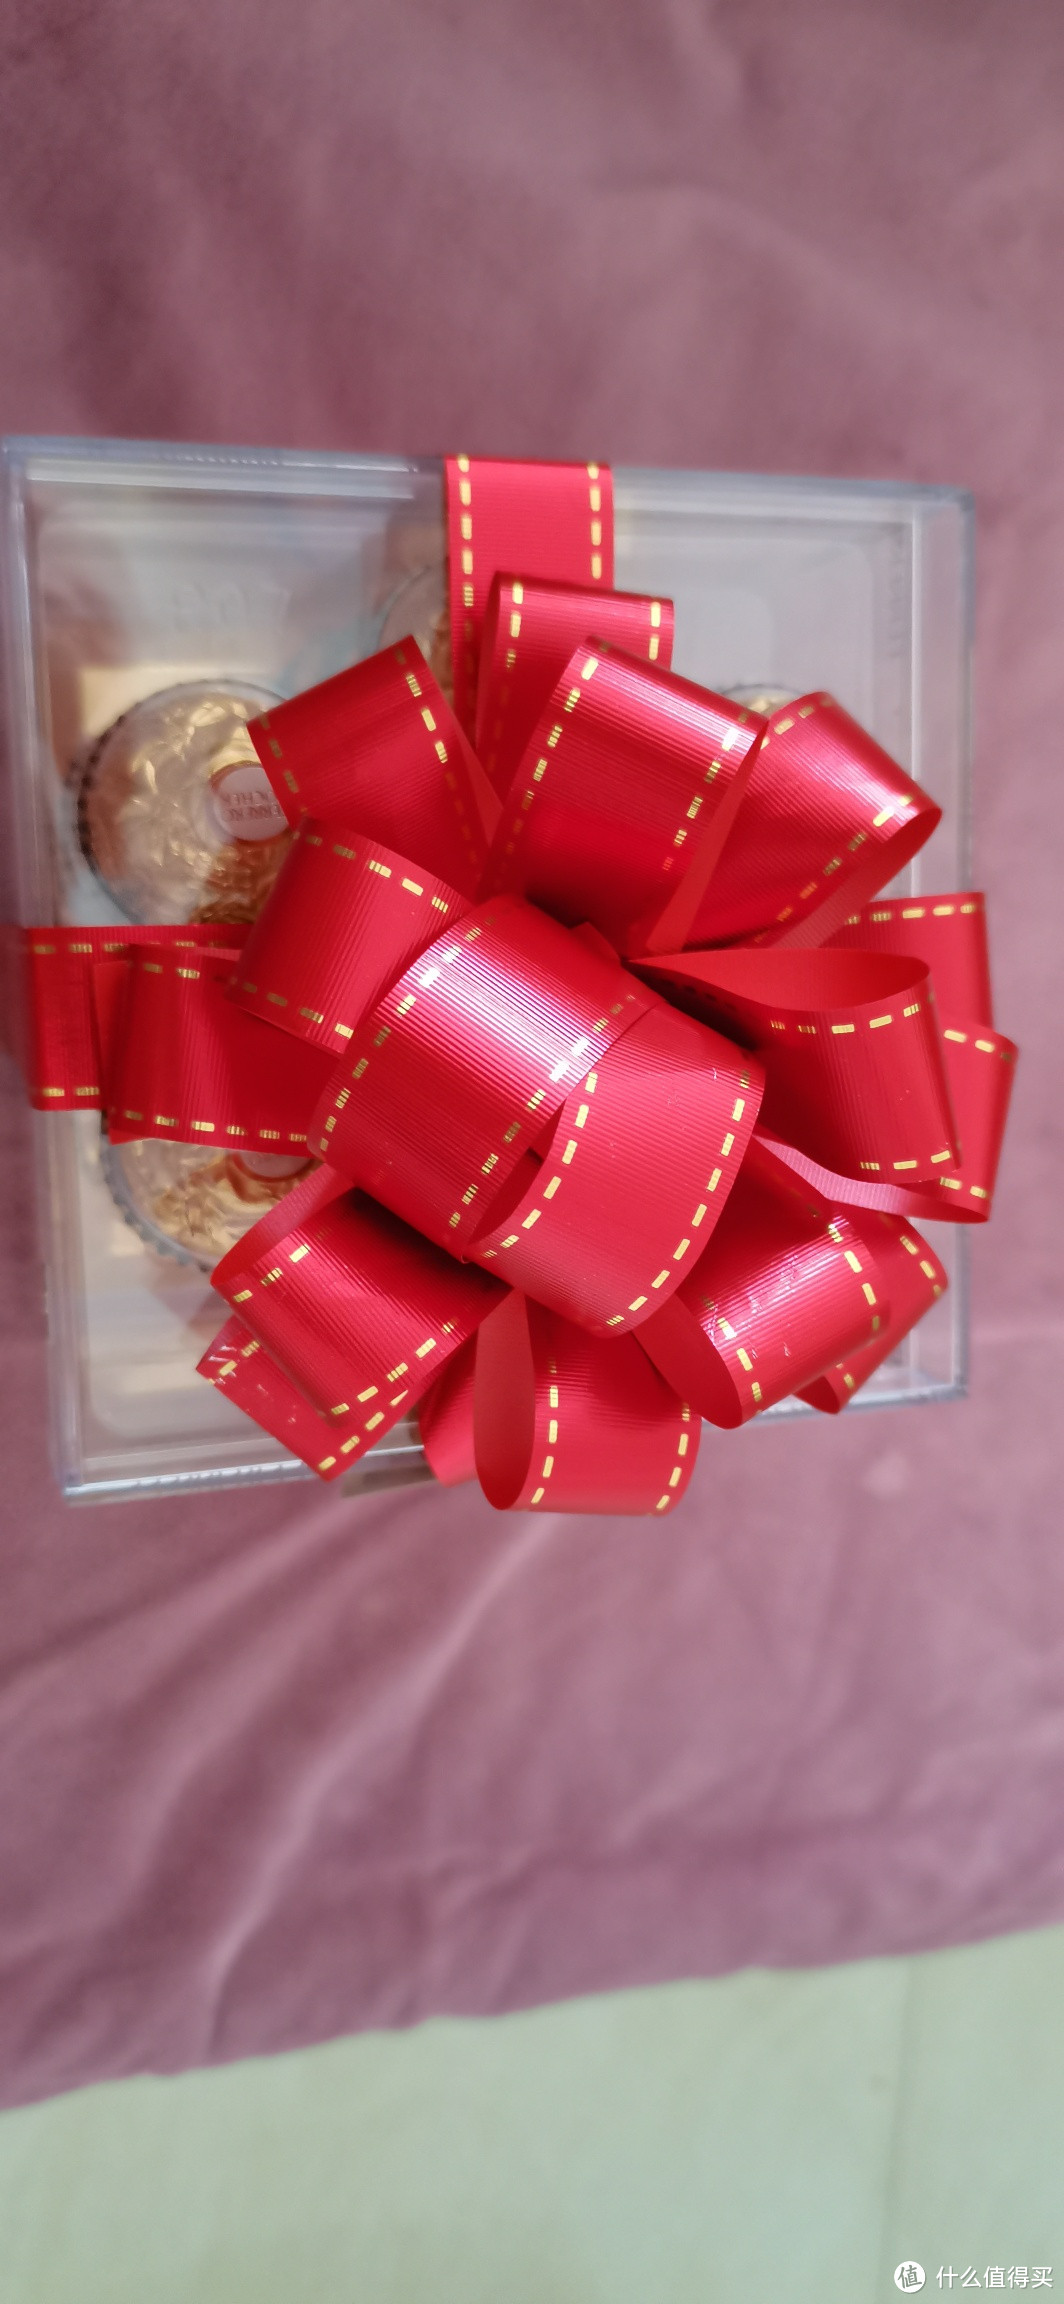 过生日老公送盒巧克力很是惊喜，看来生活需要仪式感